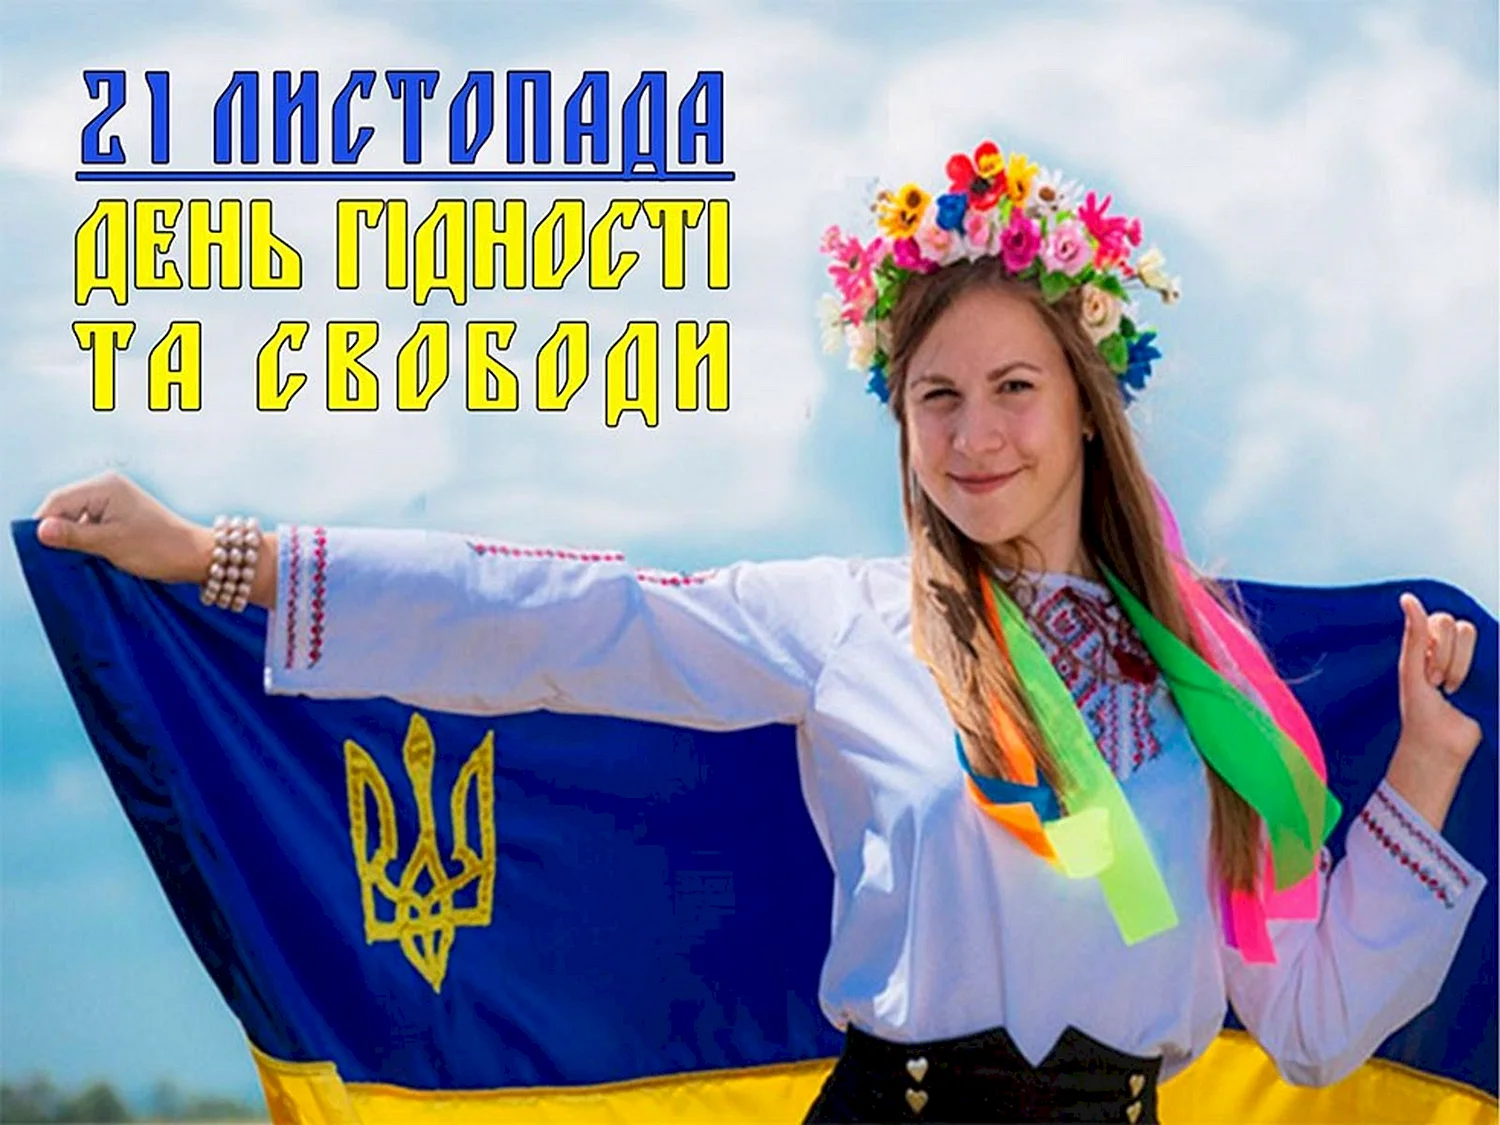 Украиночка с флагом